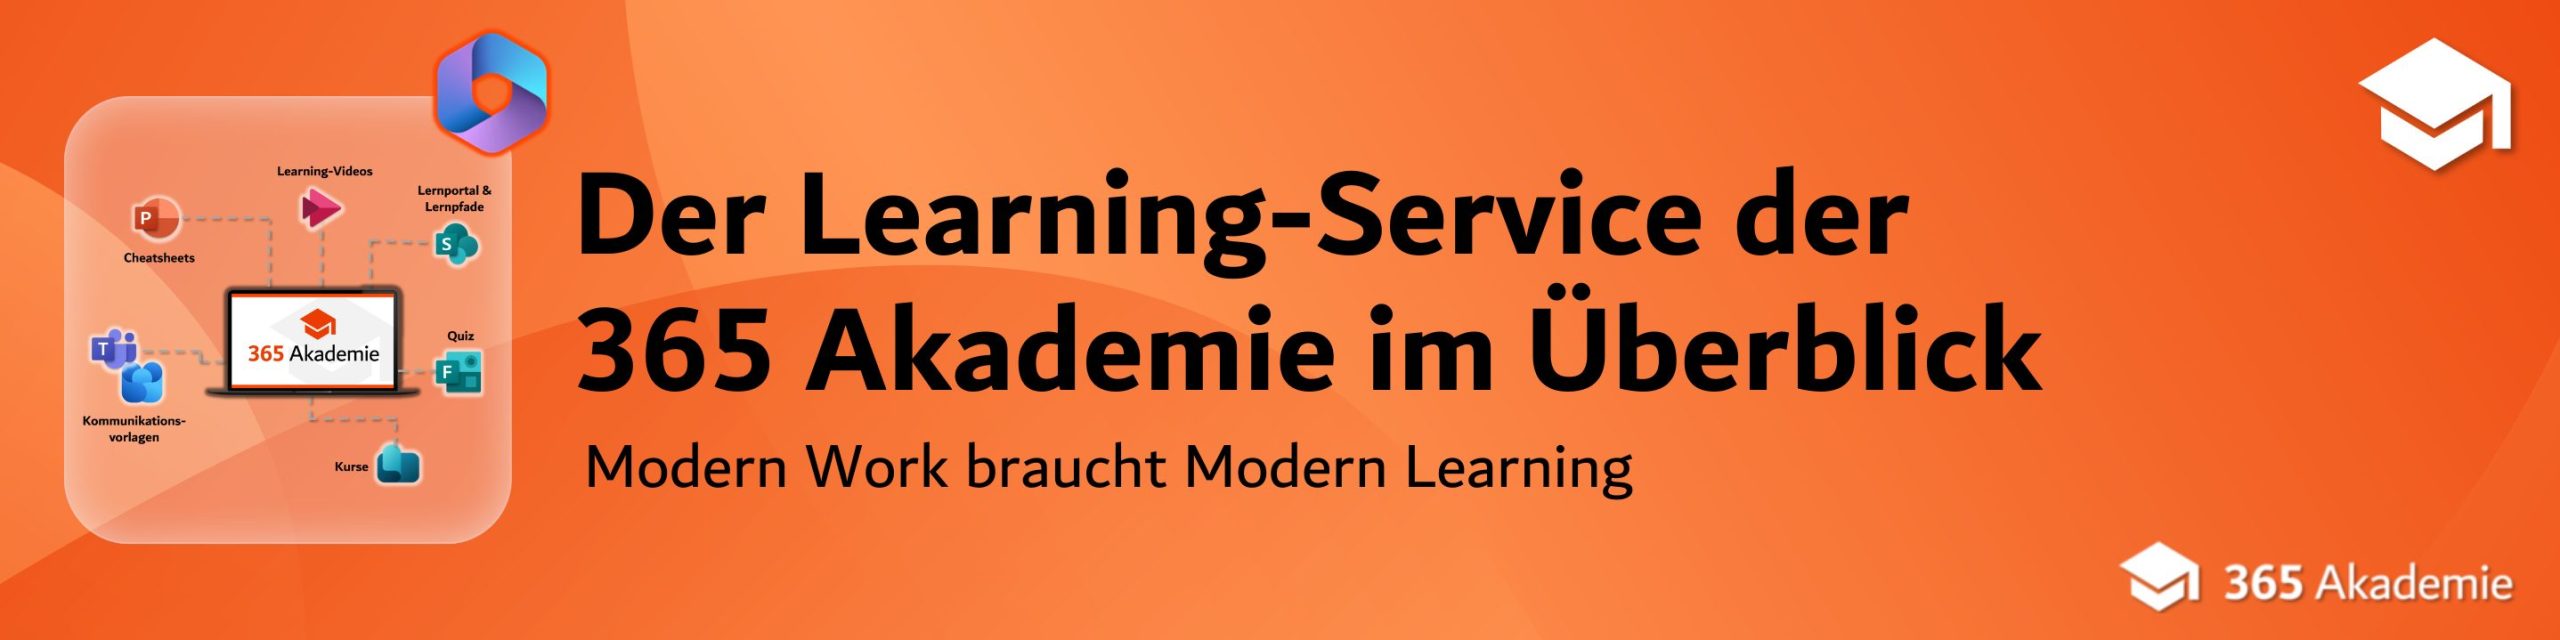 Der Learning-Service der 365 Akademie im Überblick